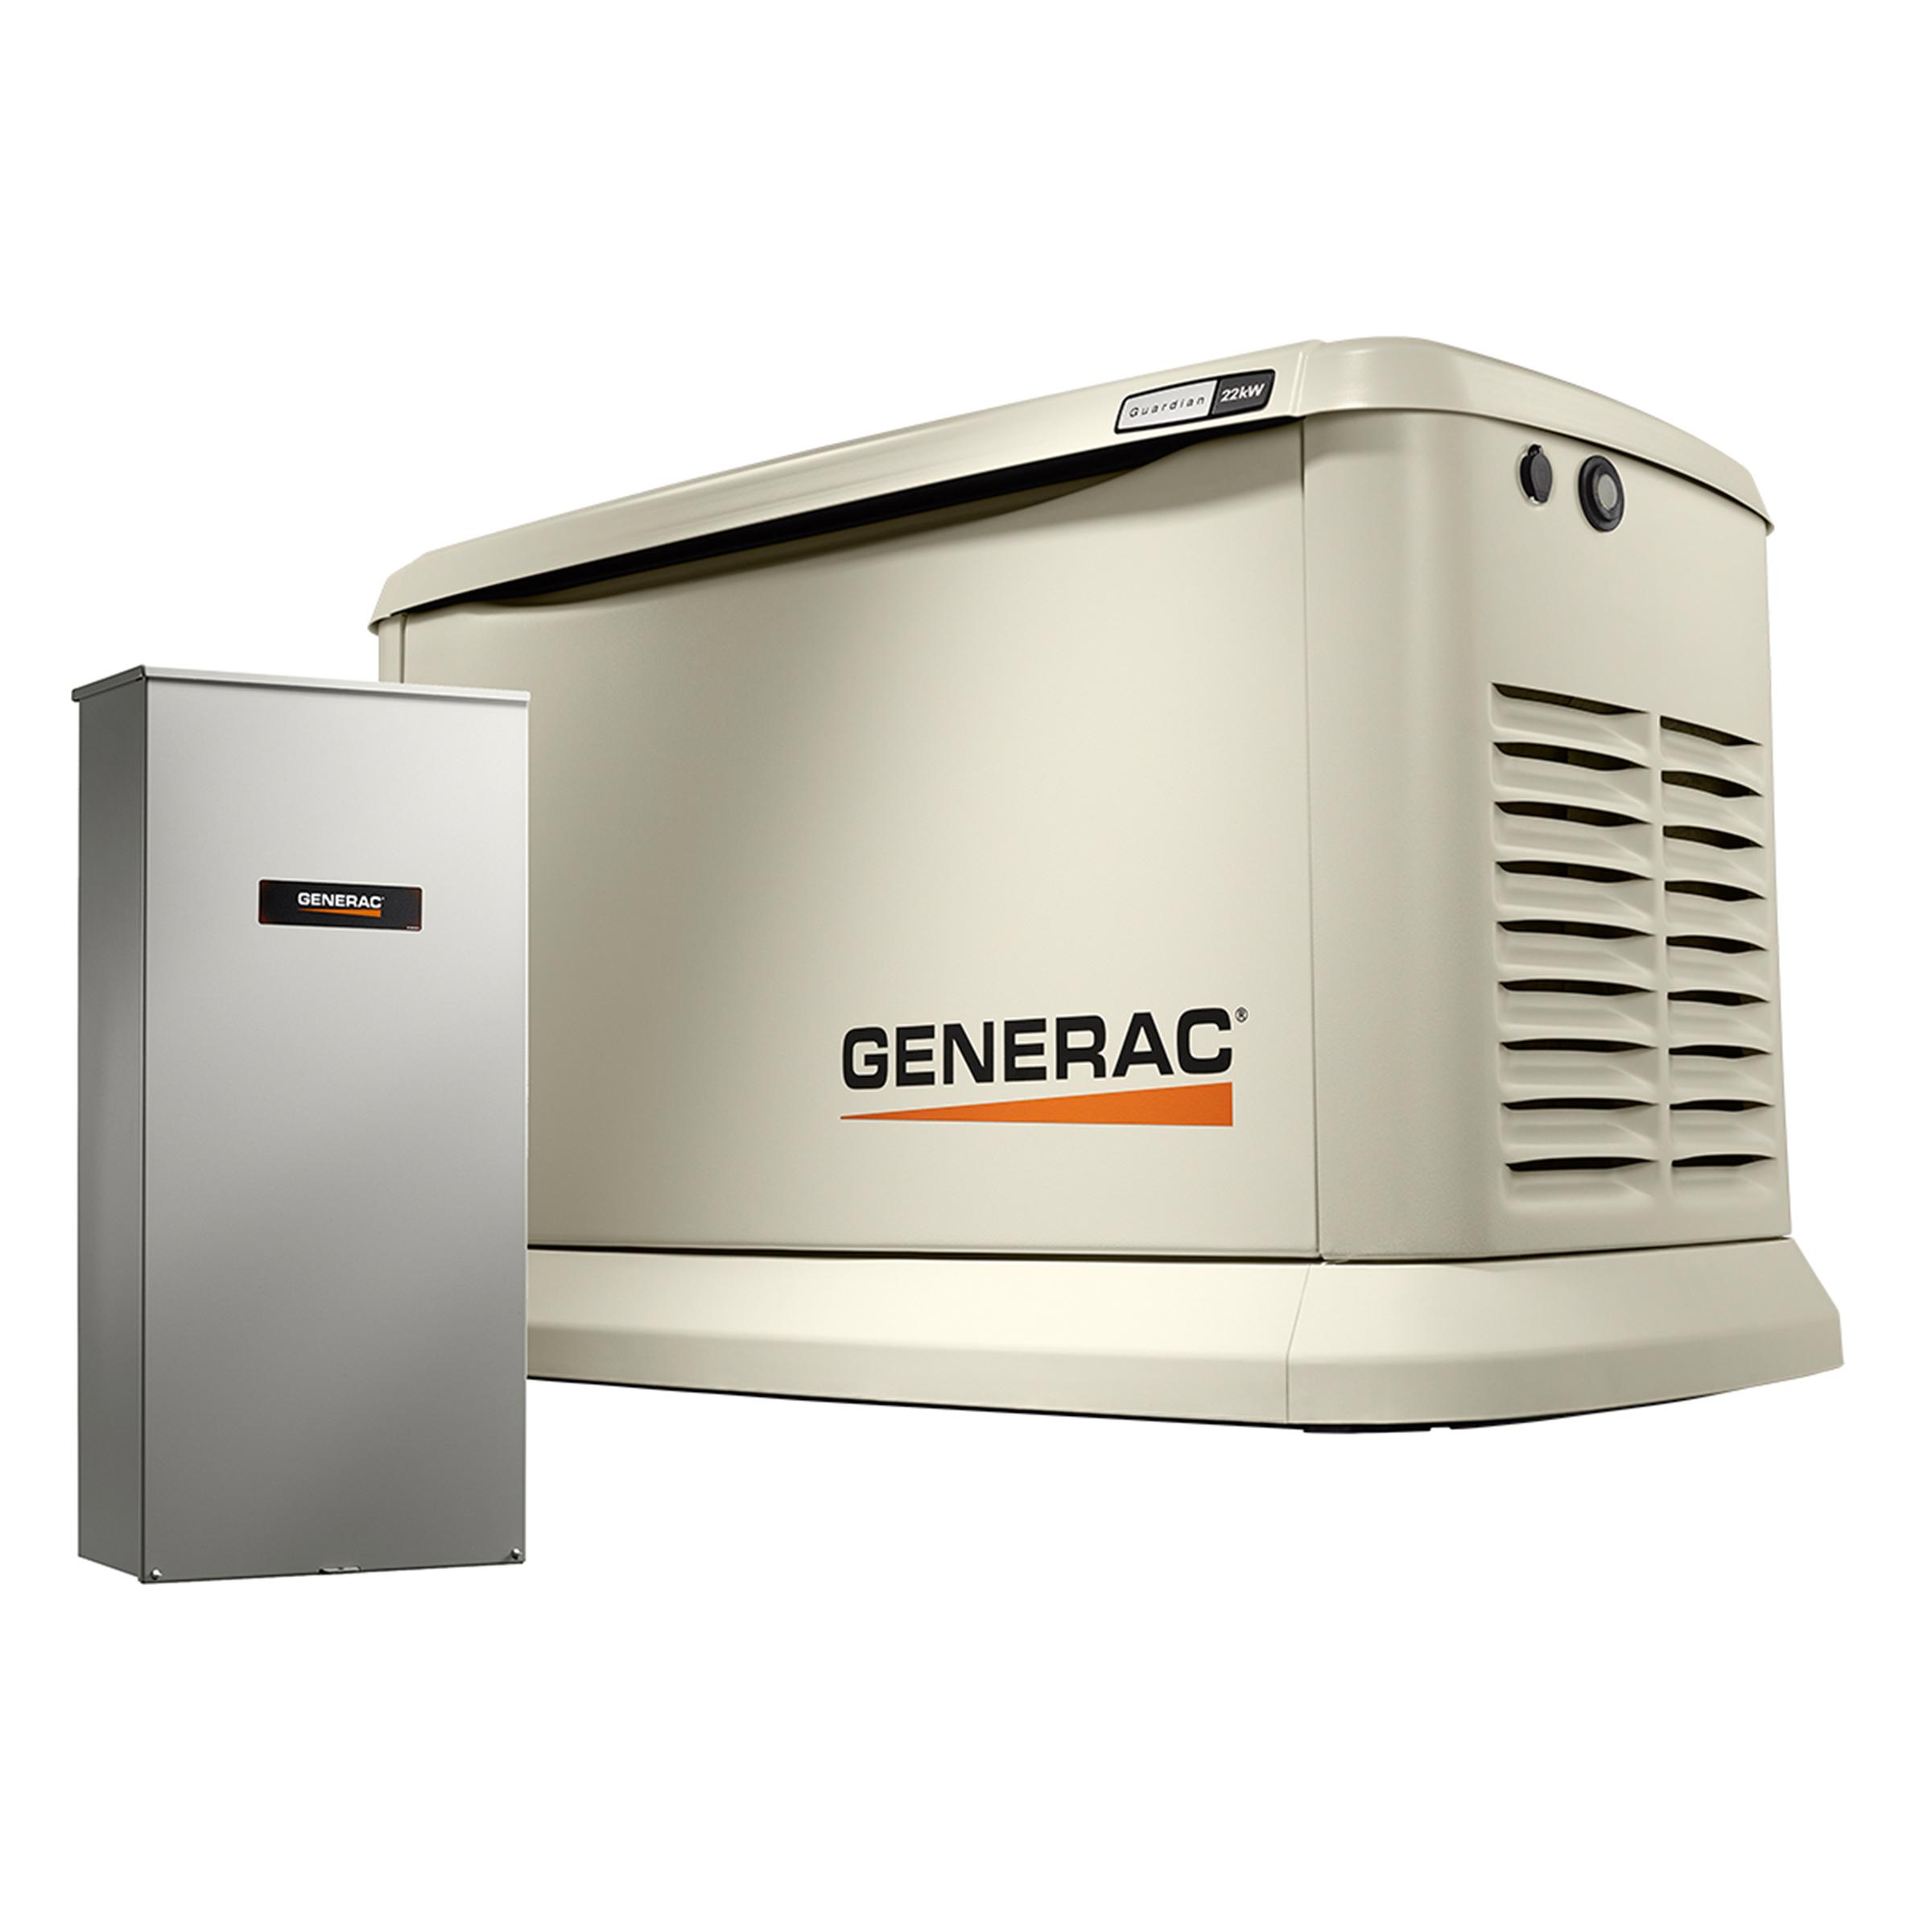 Product Generac Whole House Generator image